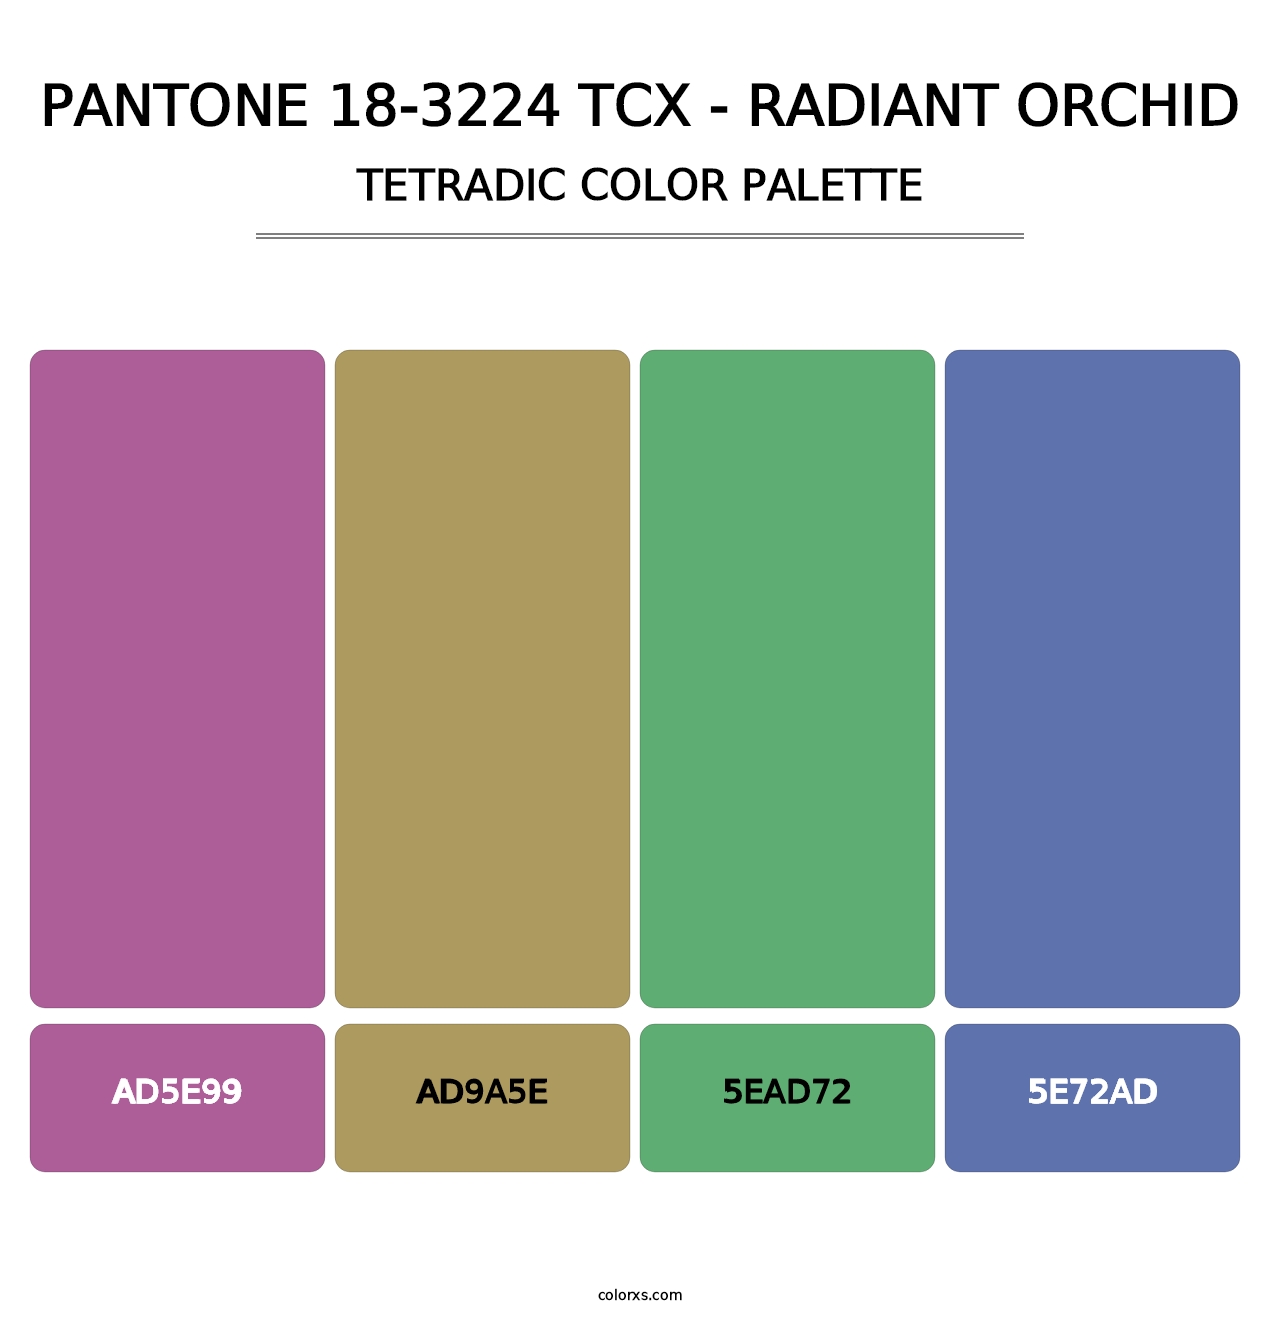 PANTONE 18-3224 TCX - Radiant Orchid - Tetradic Color Palette